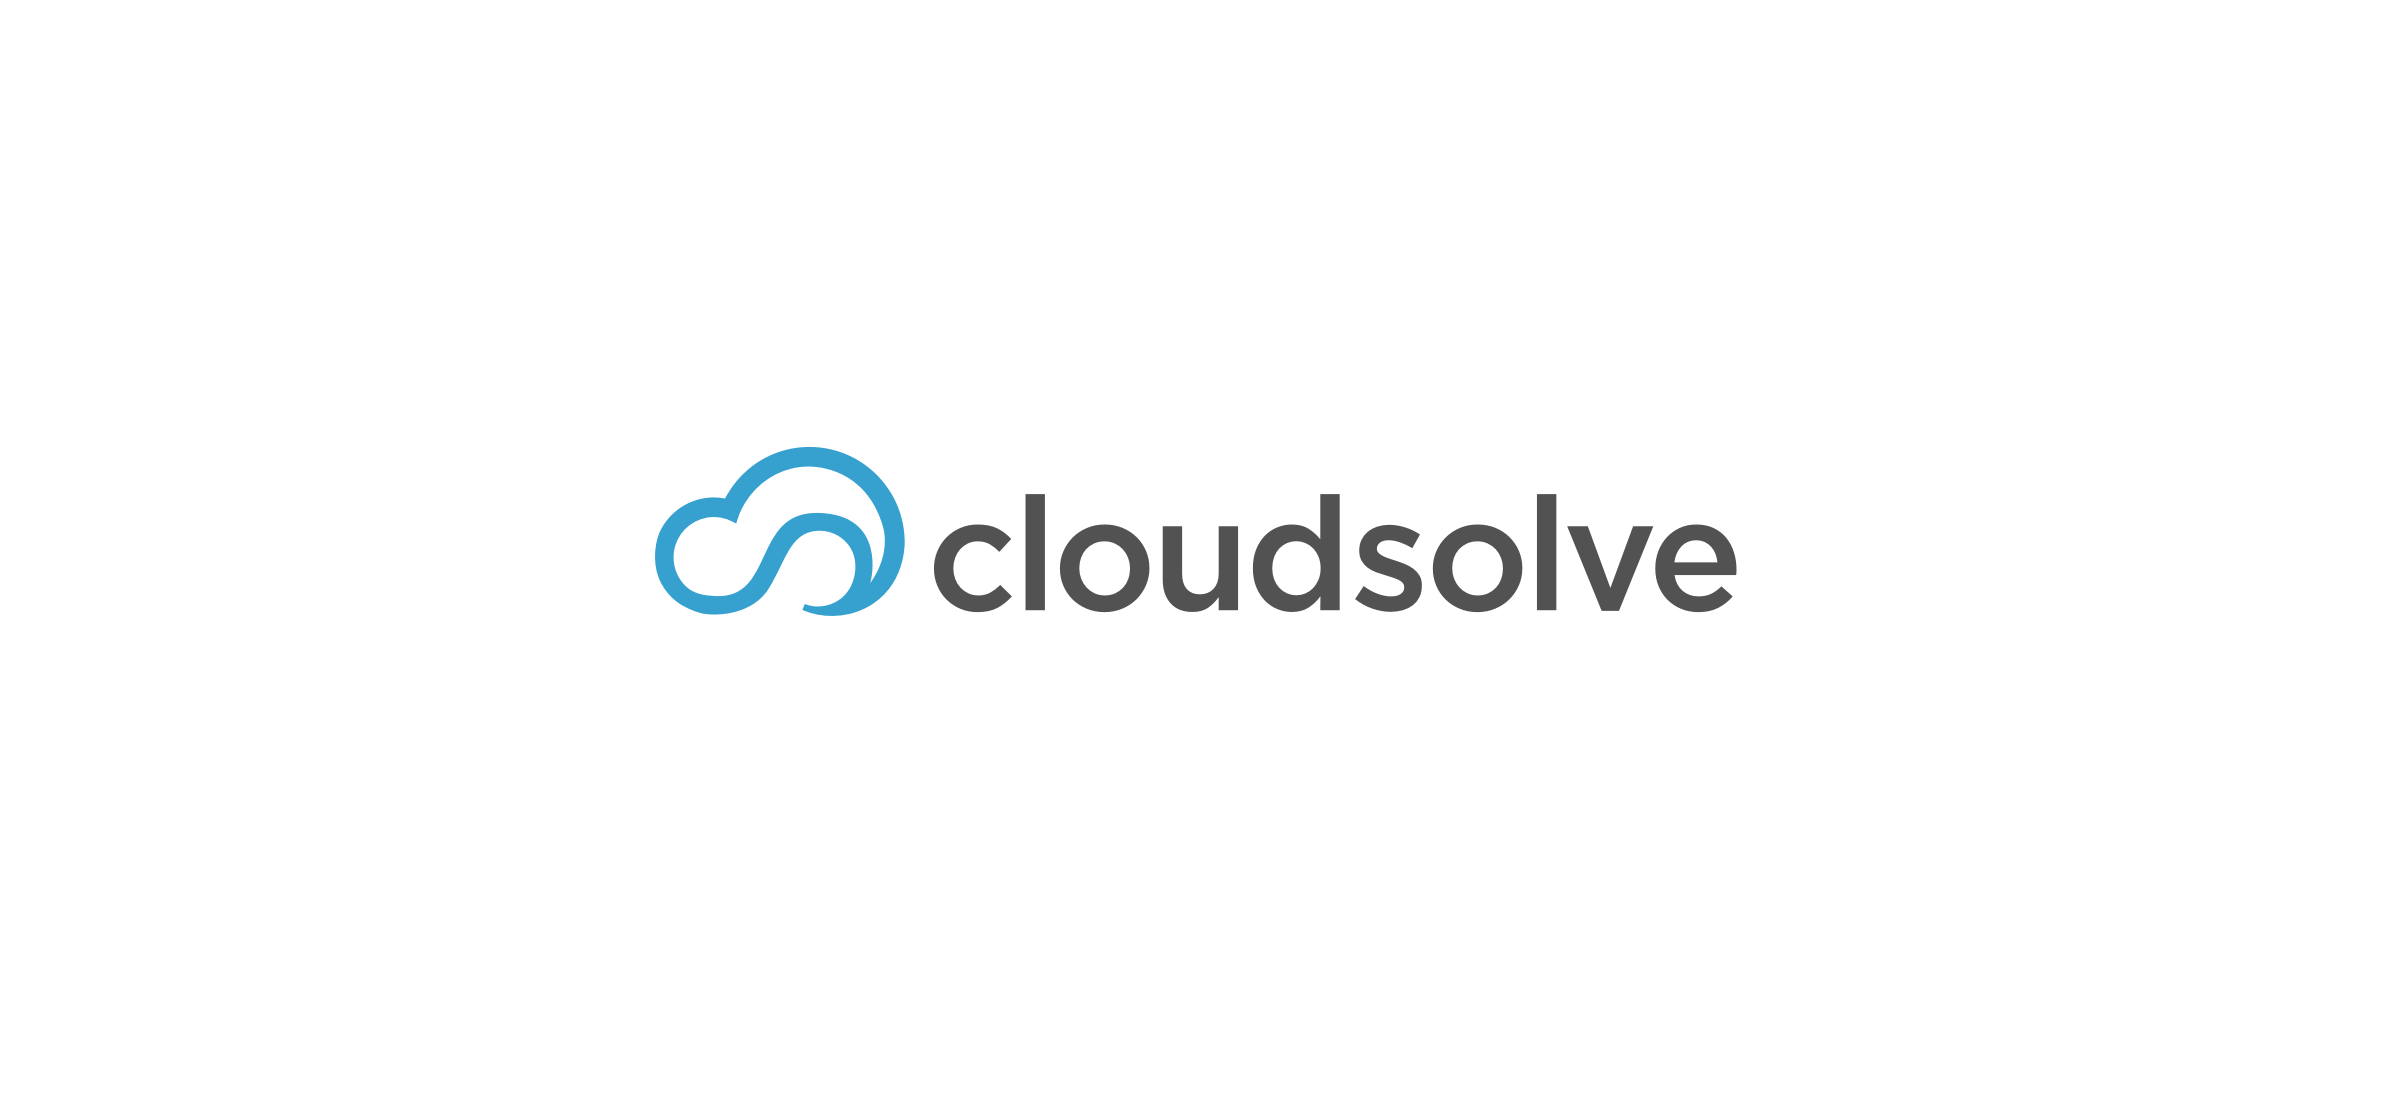 The Cloud Solve logo